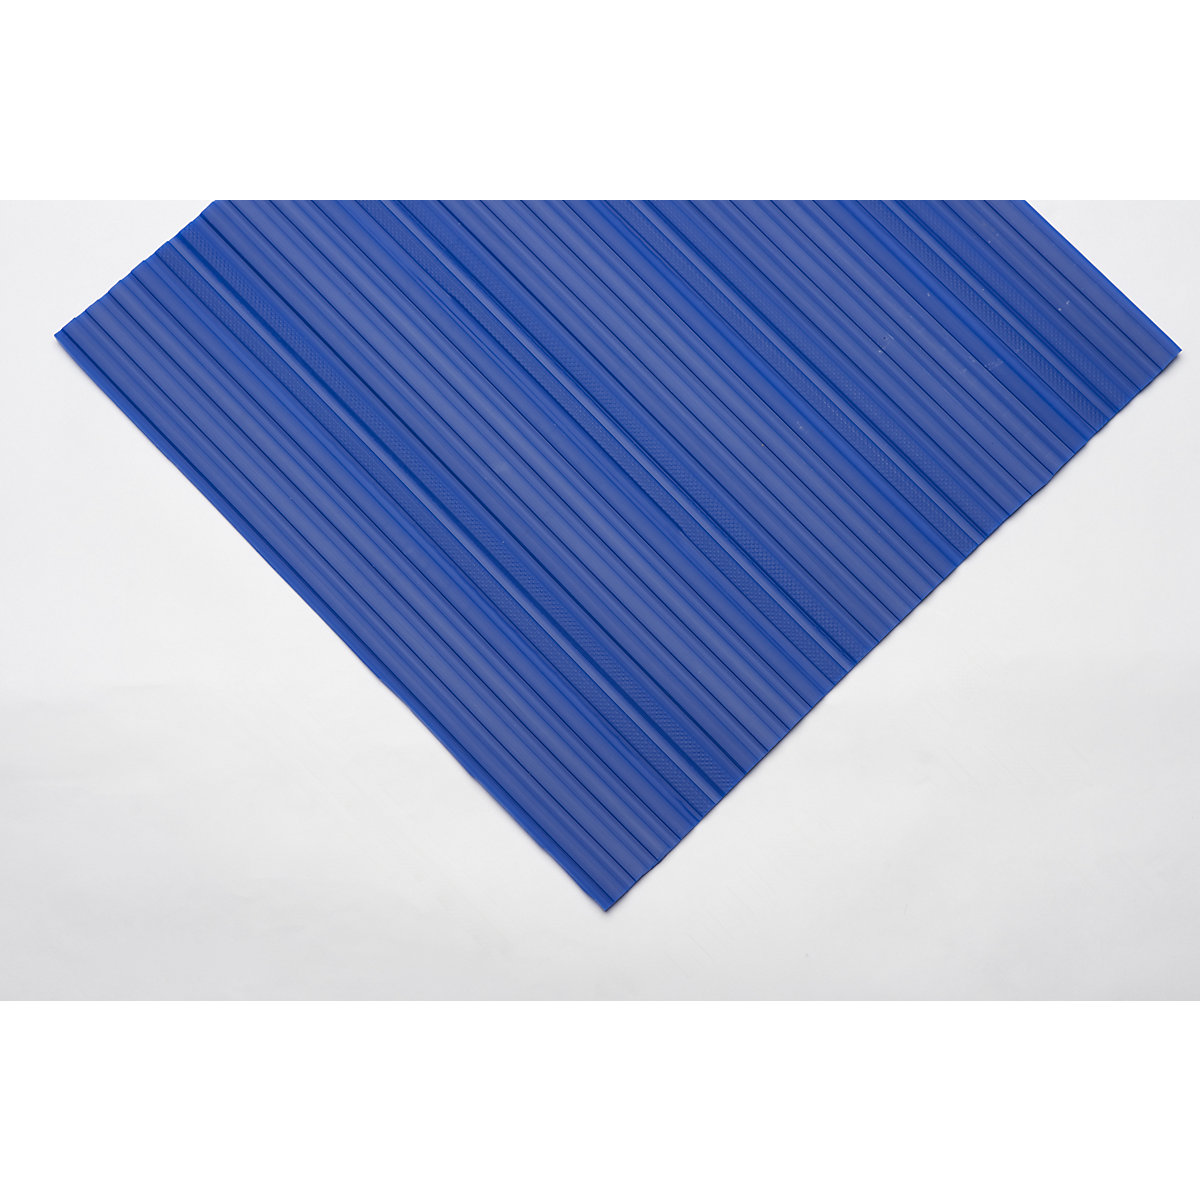 Weich-PVC-Läufer, mit geschlossener Oberfläche, pro lfd. m, blau, Breite 600 mm-5